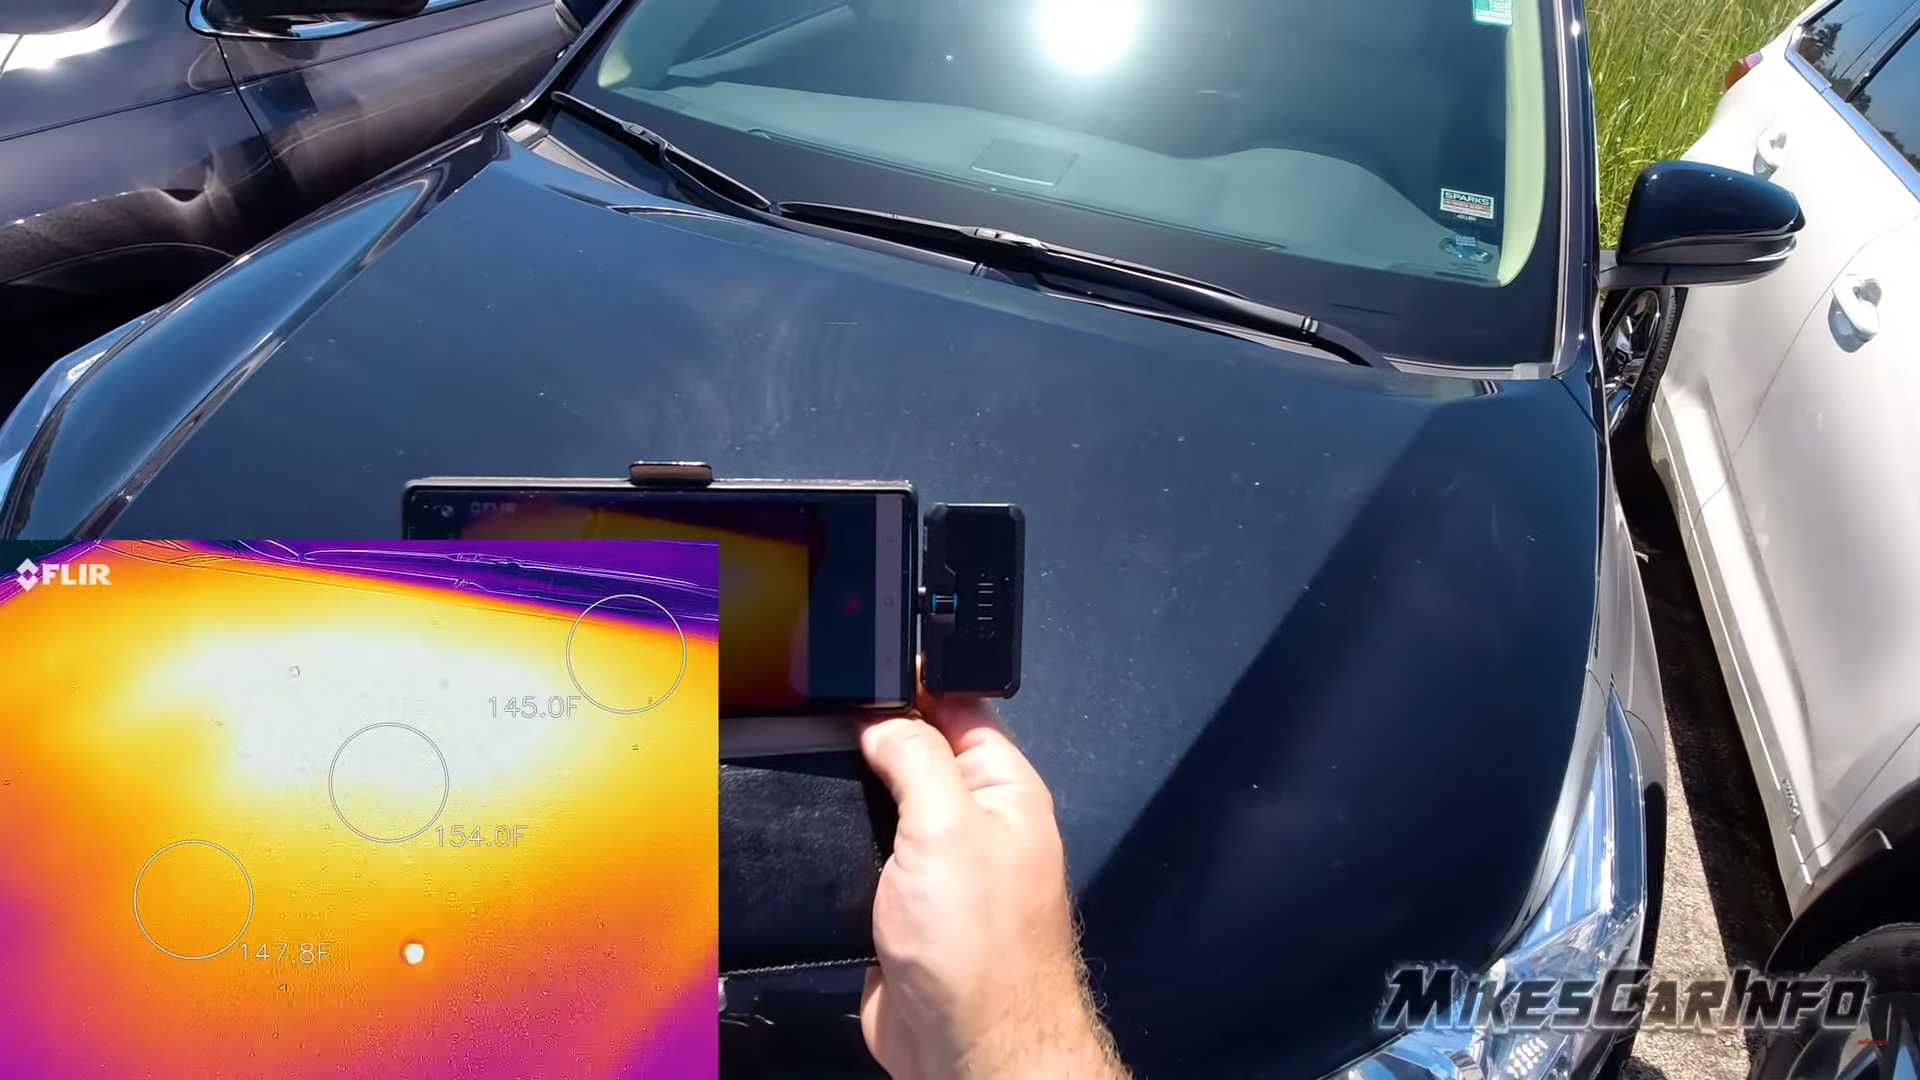 "بالفيديو" لأي مدى تختلف درجة حرارة السيارة اعتماداً على لونها؟ 11